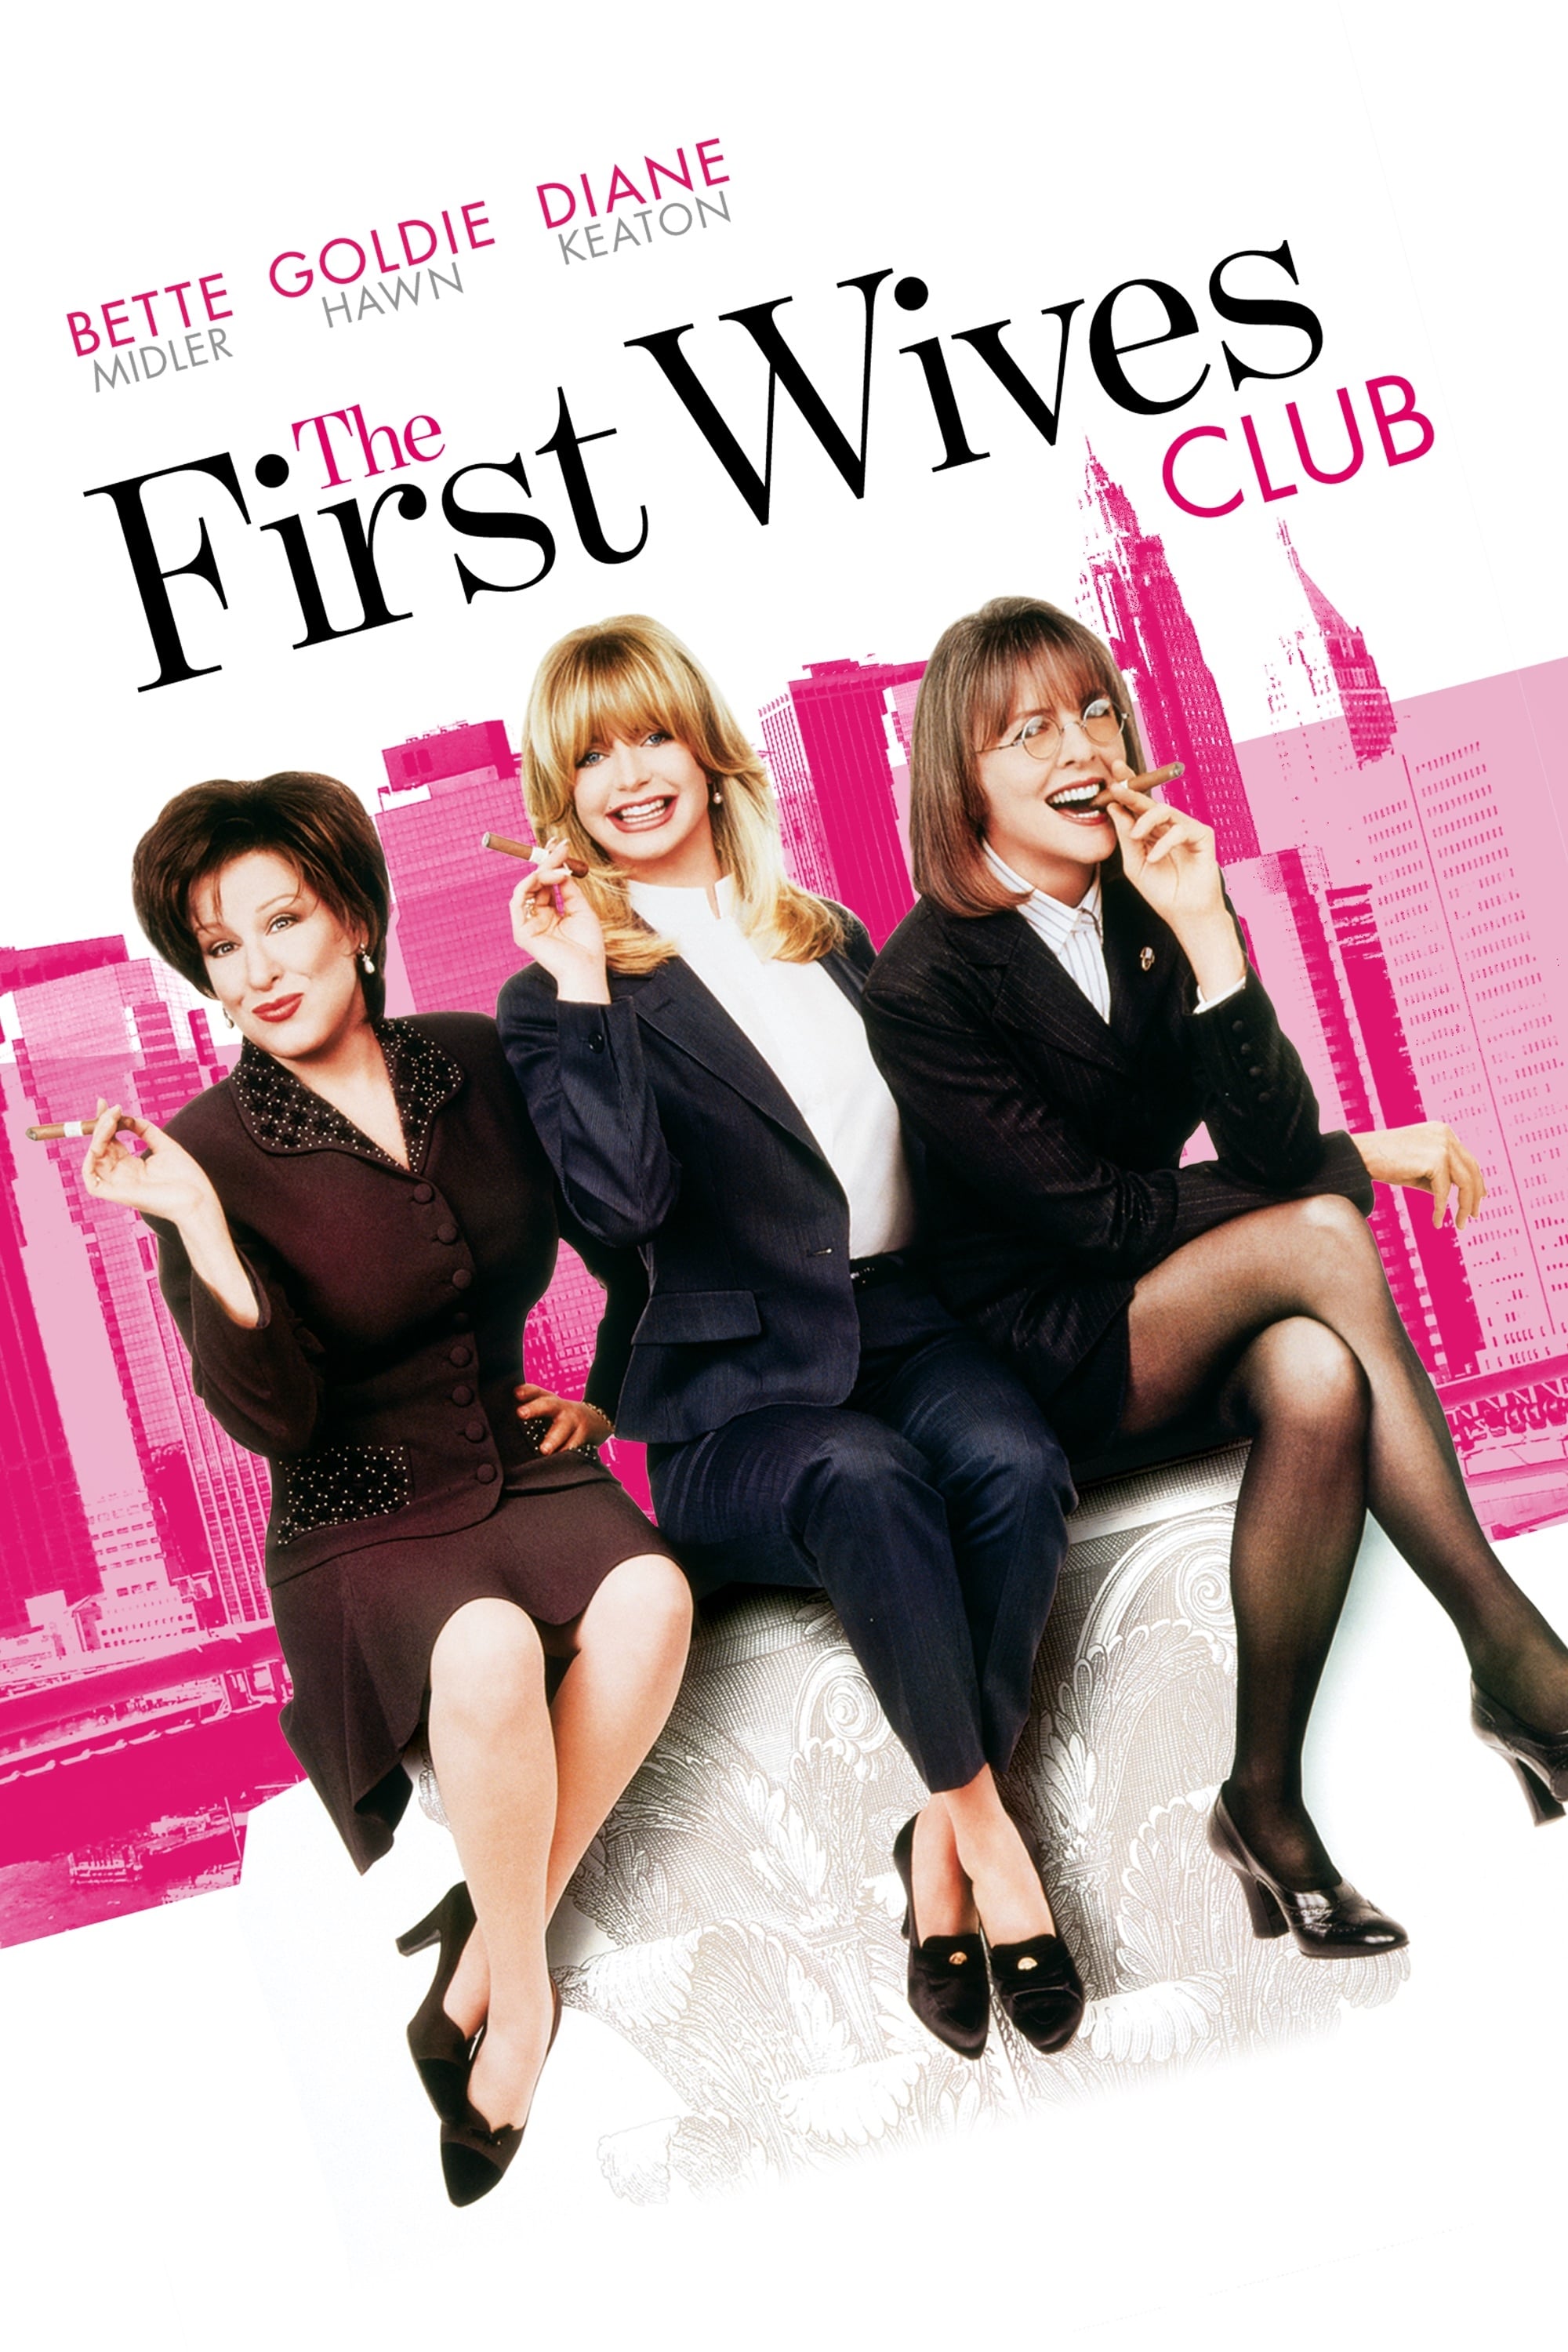 Клуб бывших мужей. Клуб первых жен (1996). Бетт Мидлер клуб первых жен. Голди Хоун клуб первых жен.